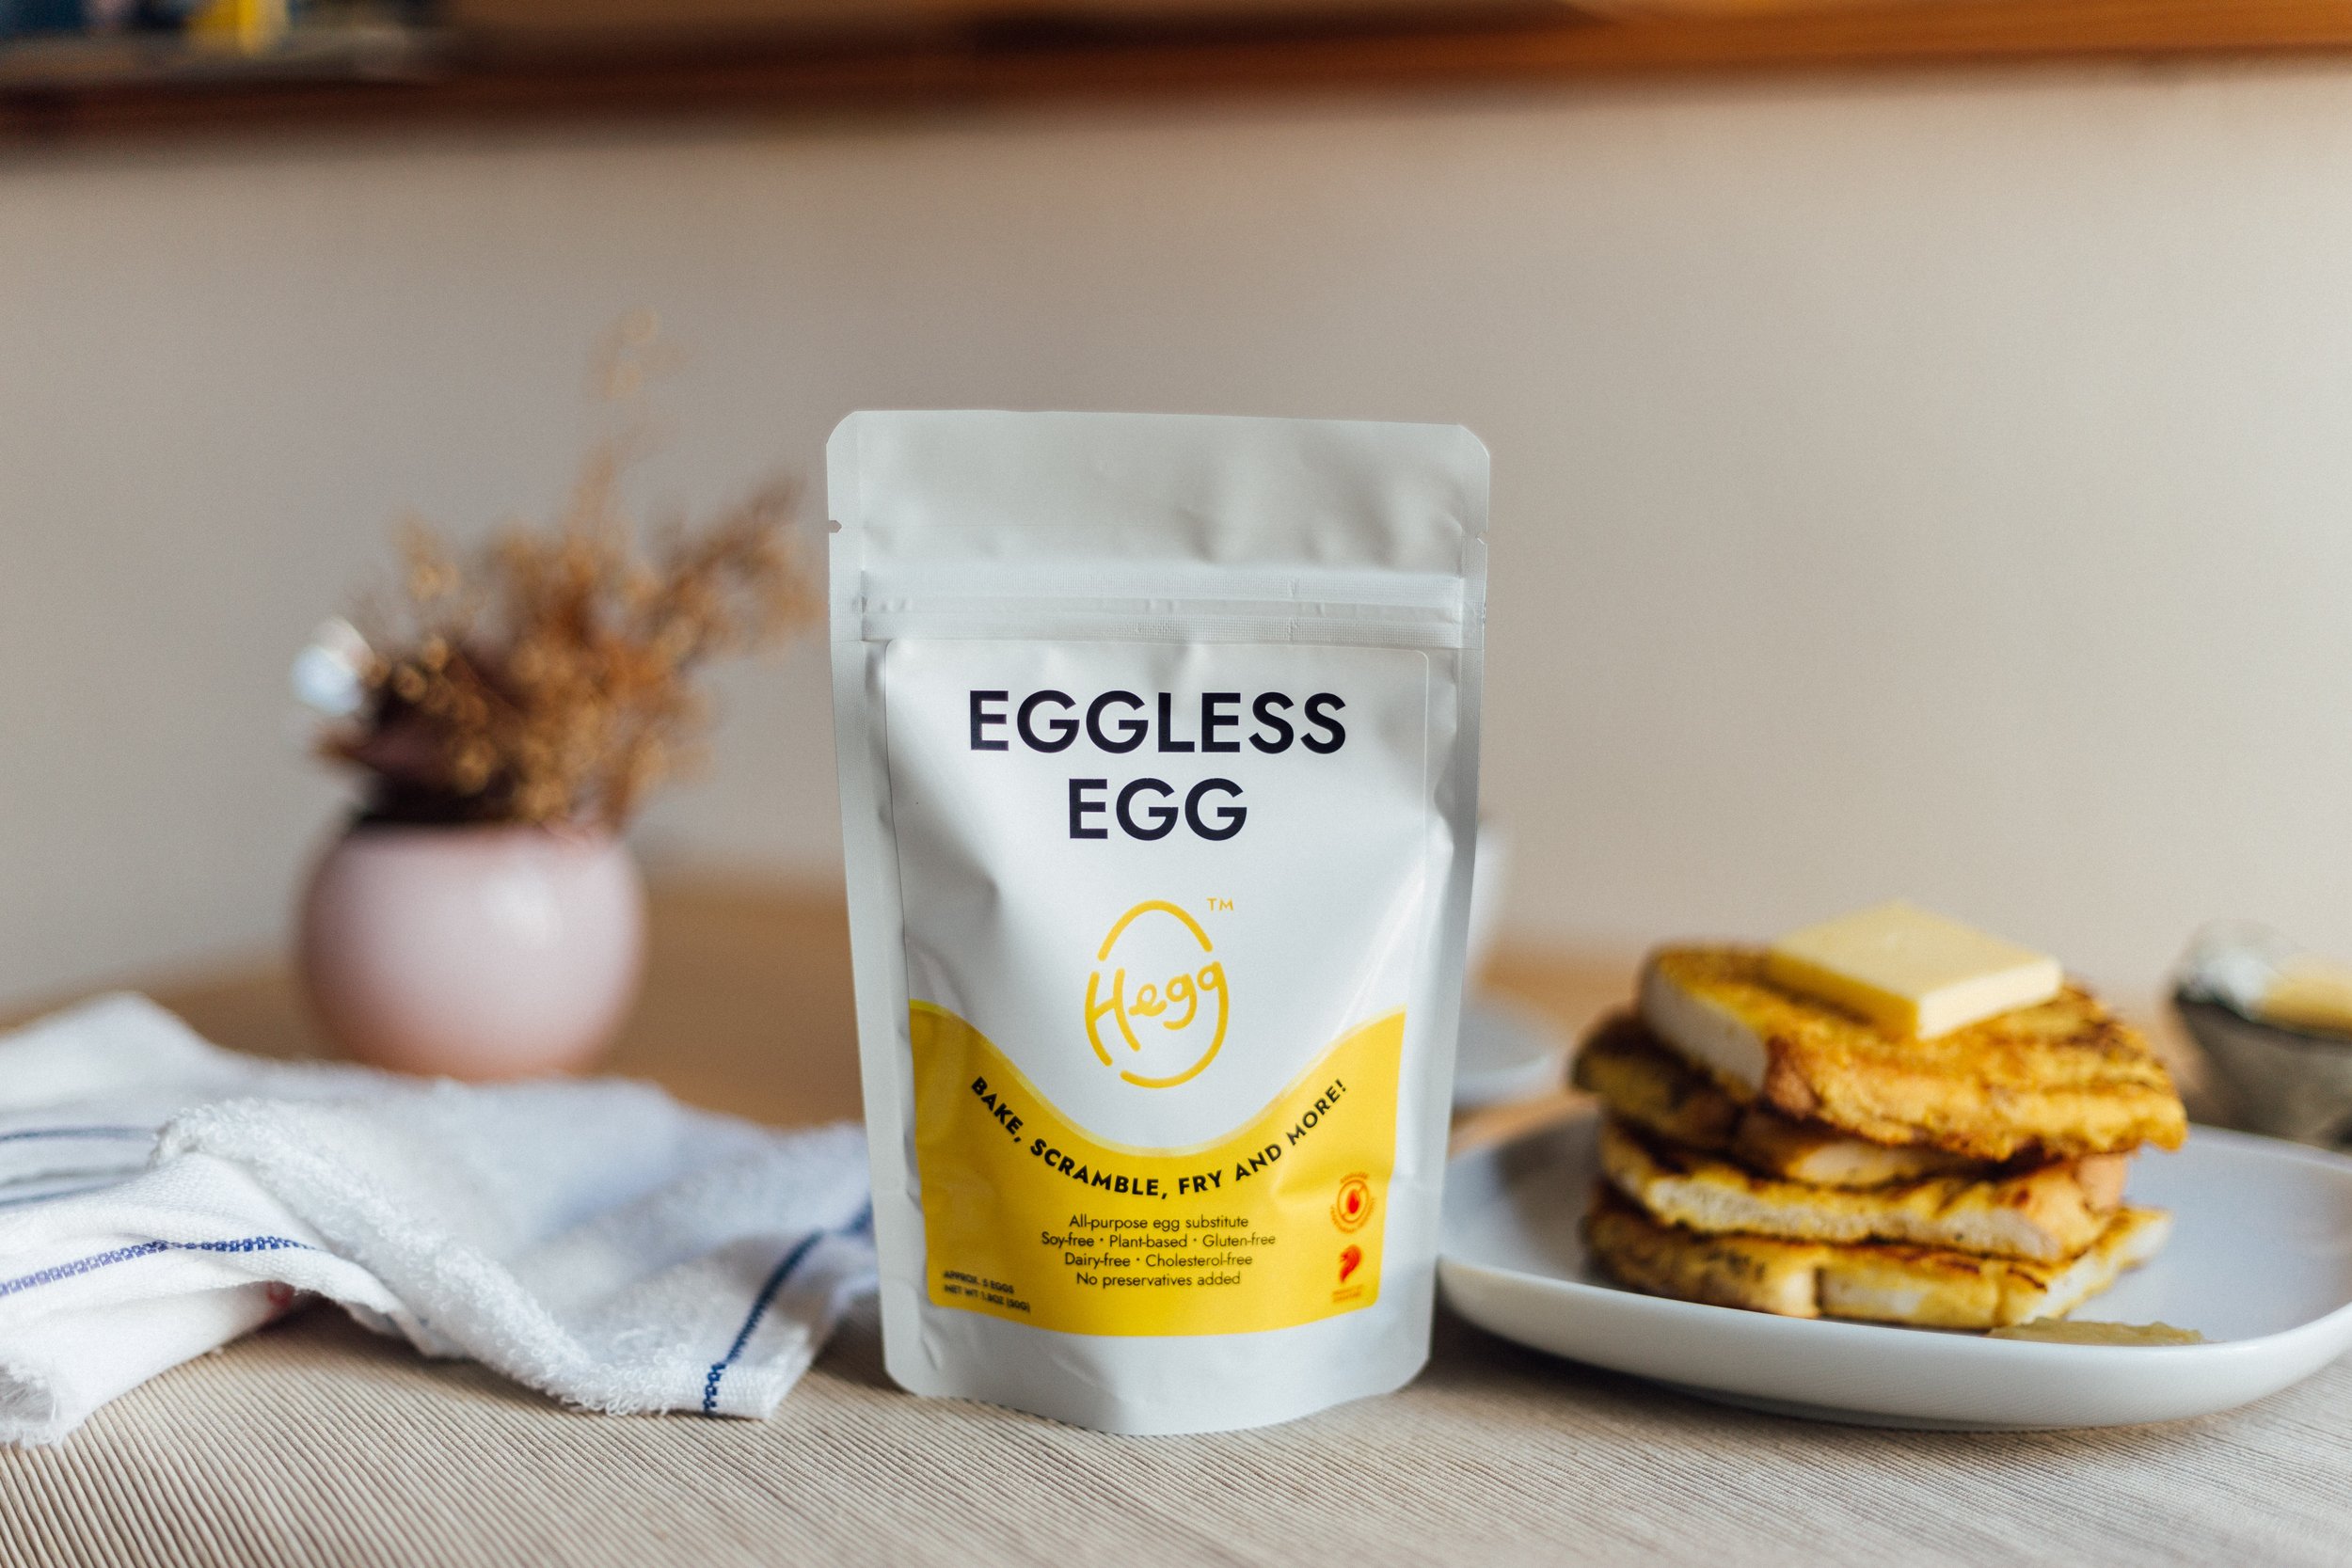 Eggless Egg packet